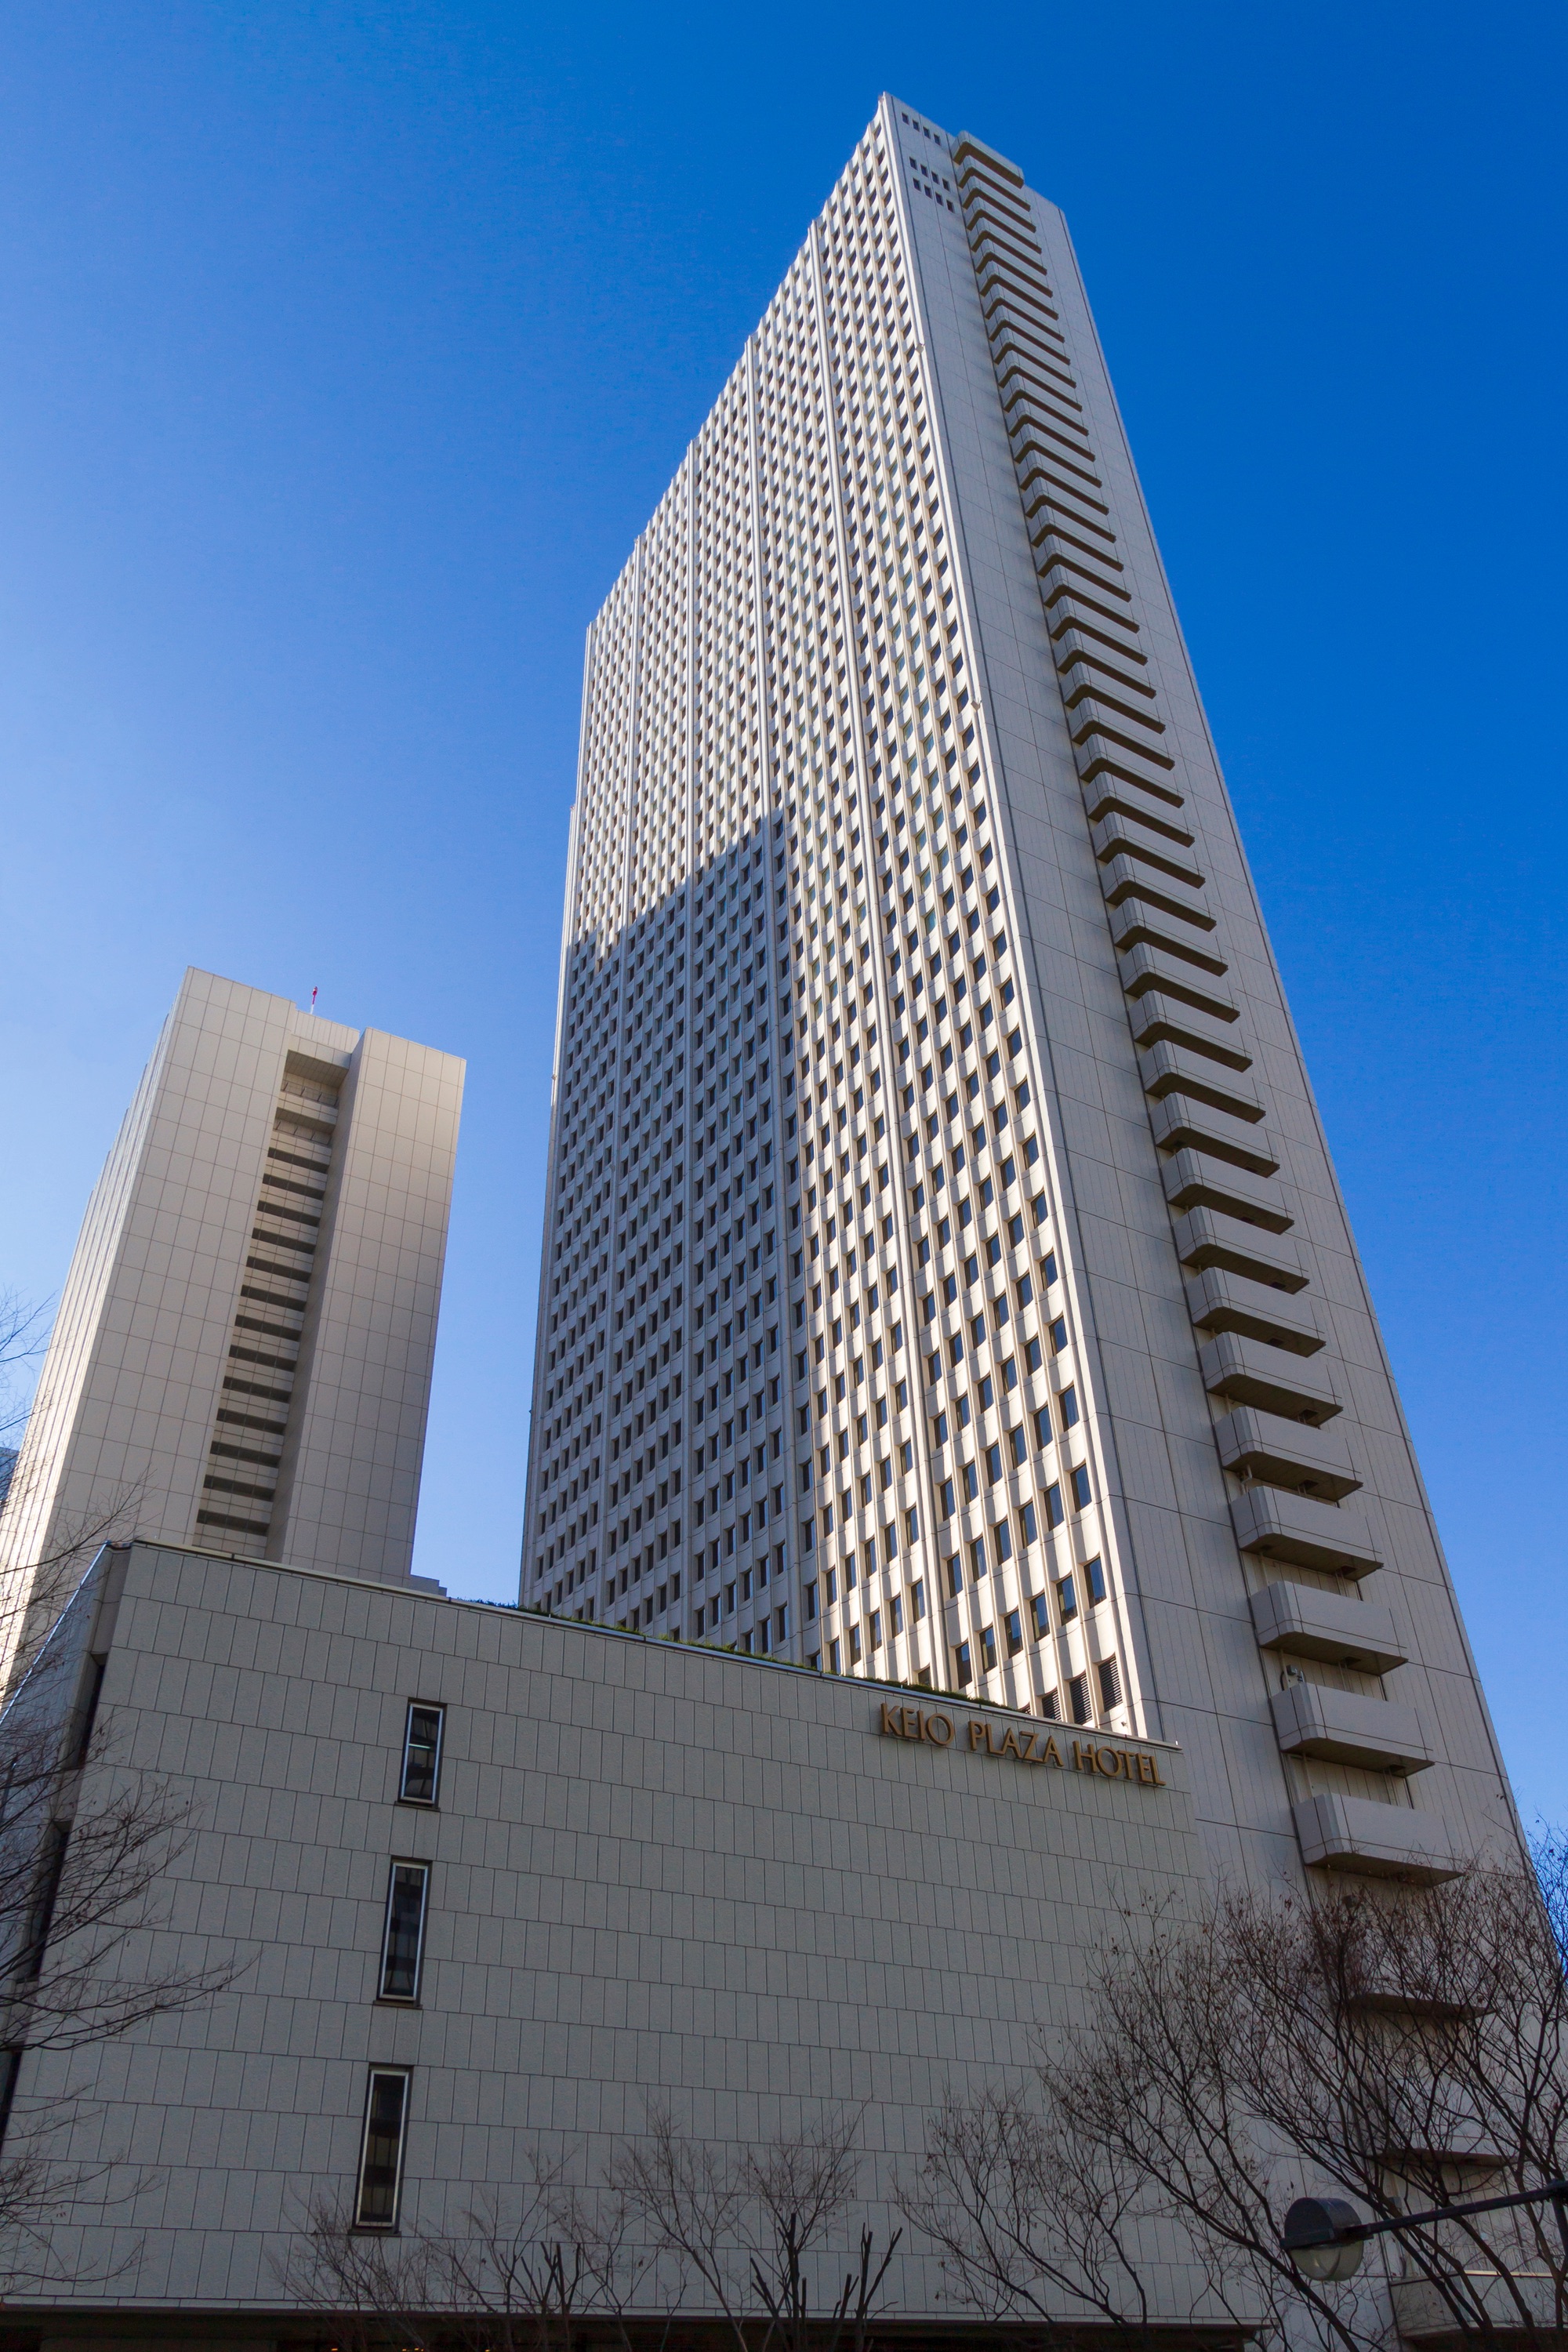 Eröffnet am 5. Juni 1971: Das Keio Plaza Hotel in Shinjuku.